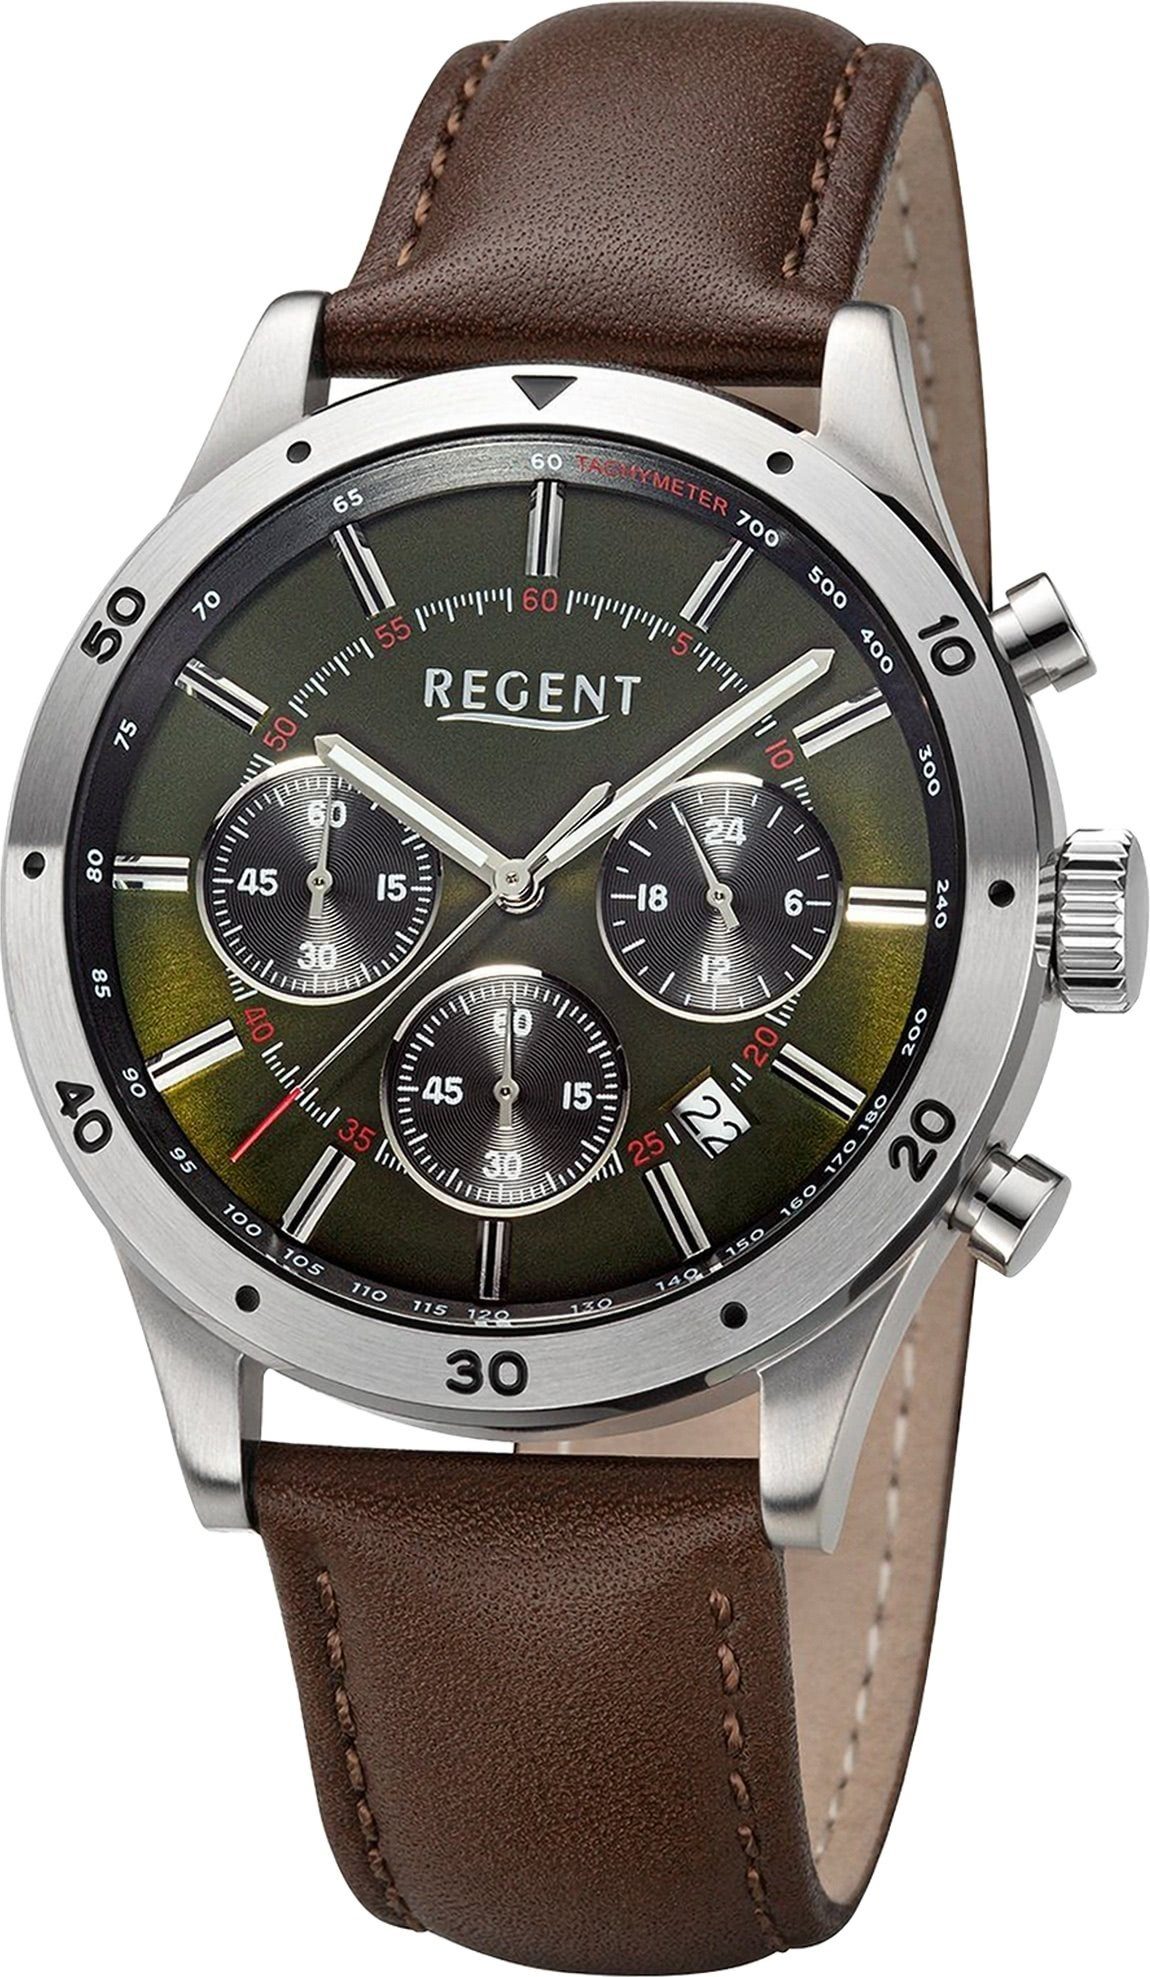 Herren Lederarmband Quarzuhr (ca. Herren 41mm), groß Analog, Armbanduhr Armbanduhr rund, Regent Regent extra